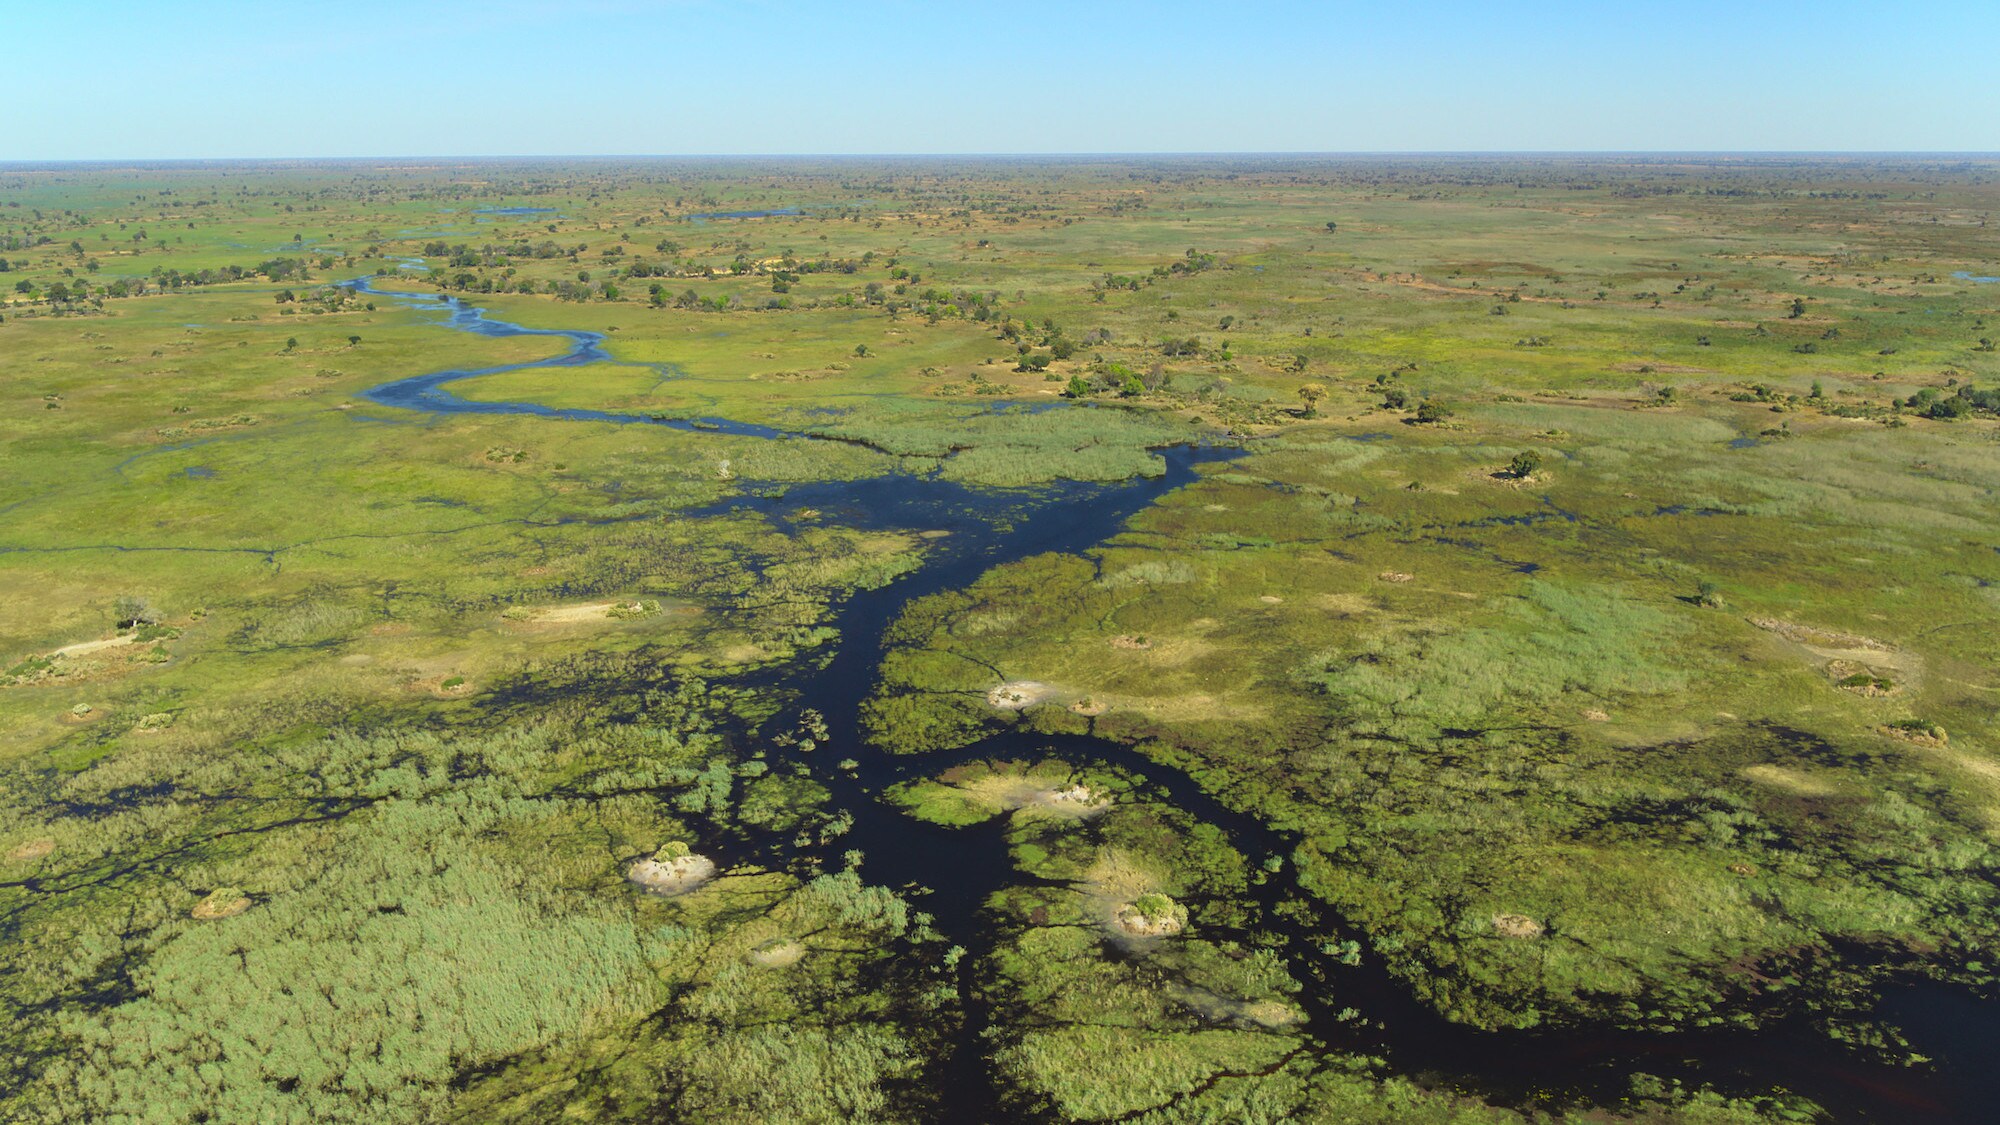 Okavango Delta. (National Geographic for Disney+/Bertie Gregory)